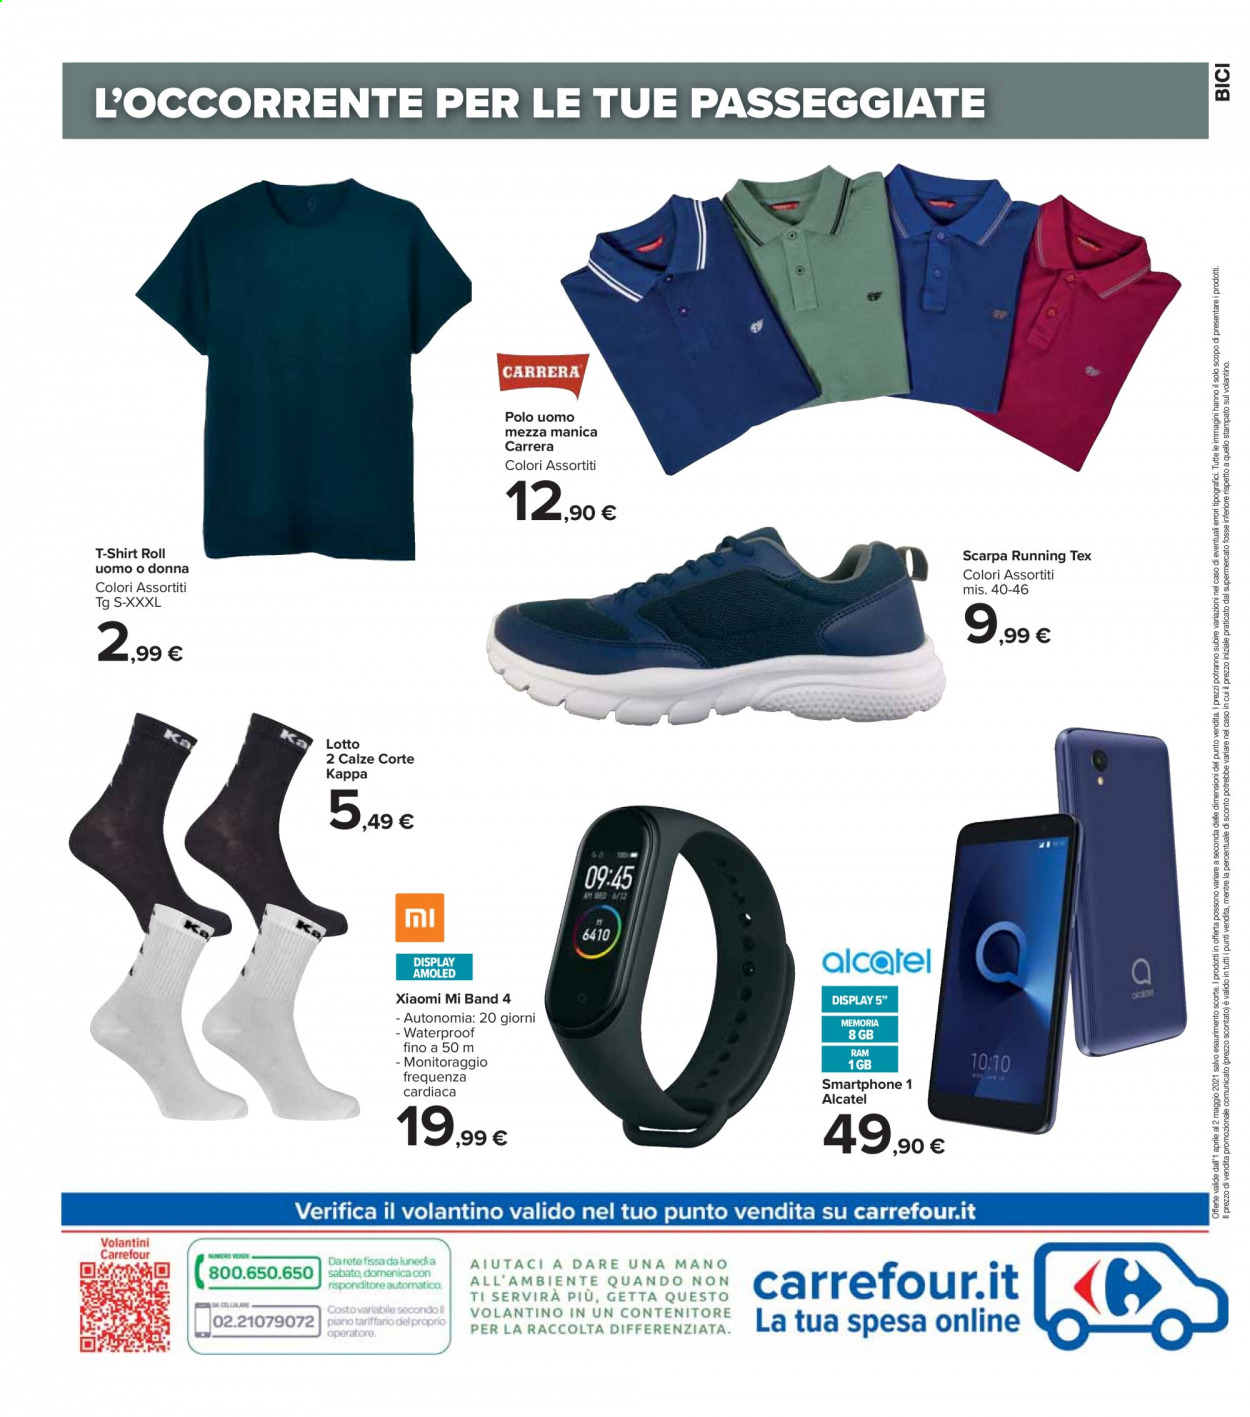 thumbnail - Volantino Carrefour - 1/4/2021 - 2/5/2021 - Prodotti in offerta - Carrera, Kappa, Lotto, smartphone, t-shirt, polo golf, calze, bicicletta. Pagina 8.